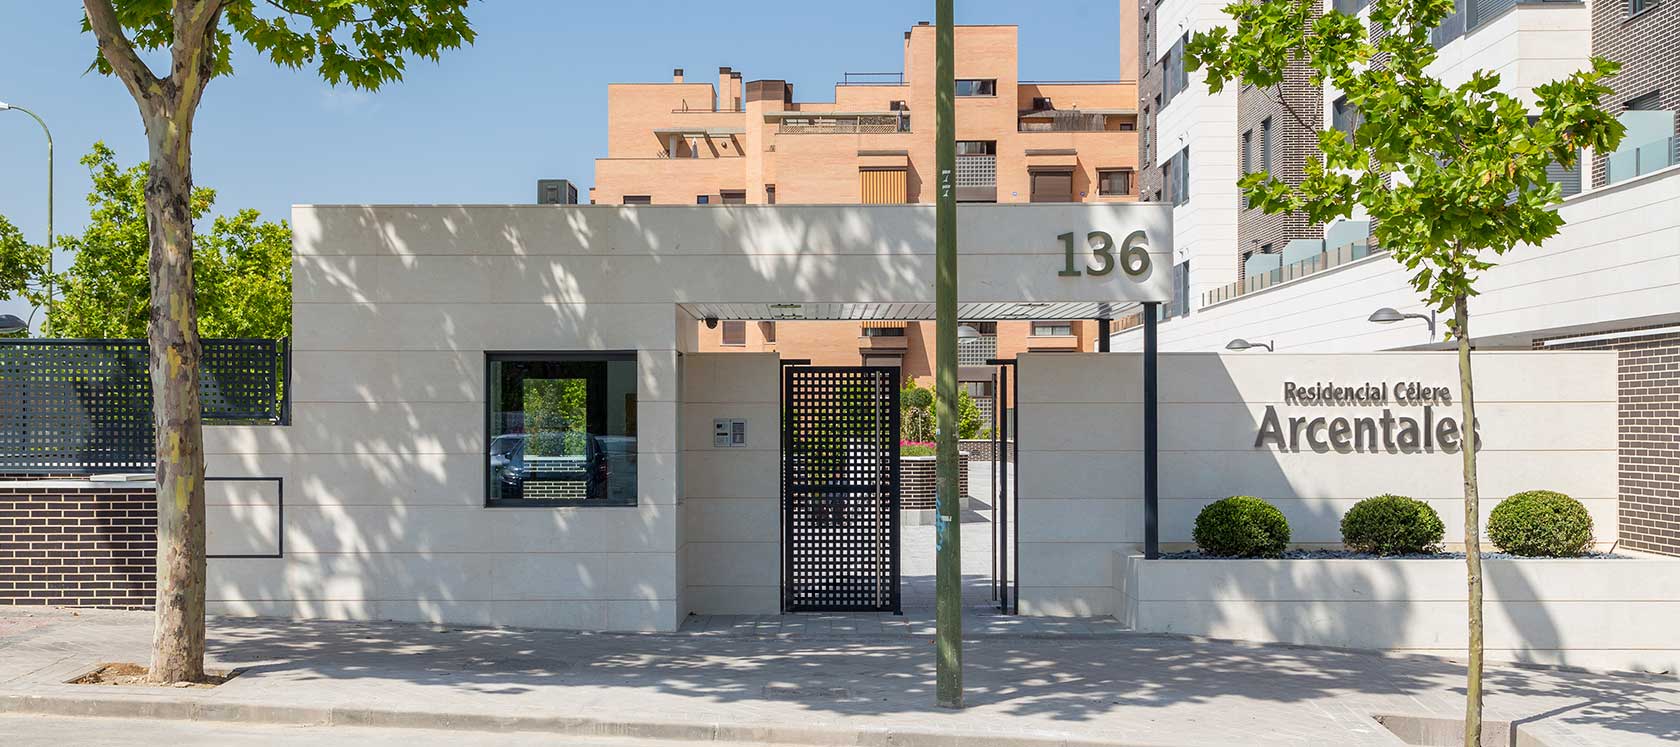 Pisos en ciudad lineal Madrid obra nueva arcentales obra nueva arcentales